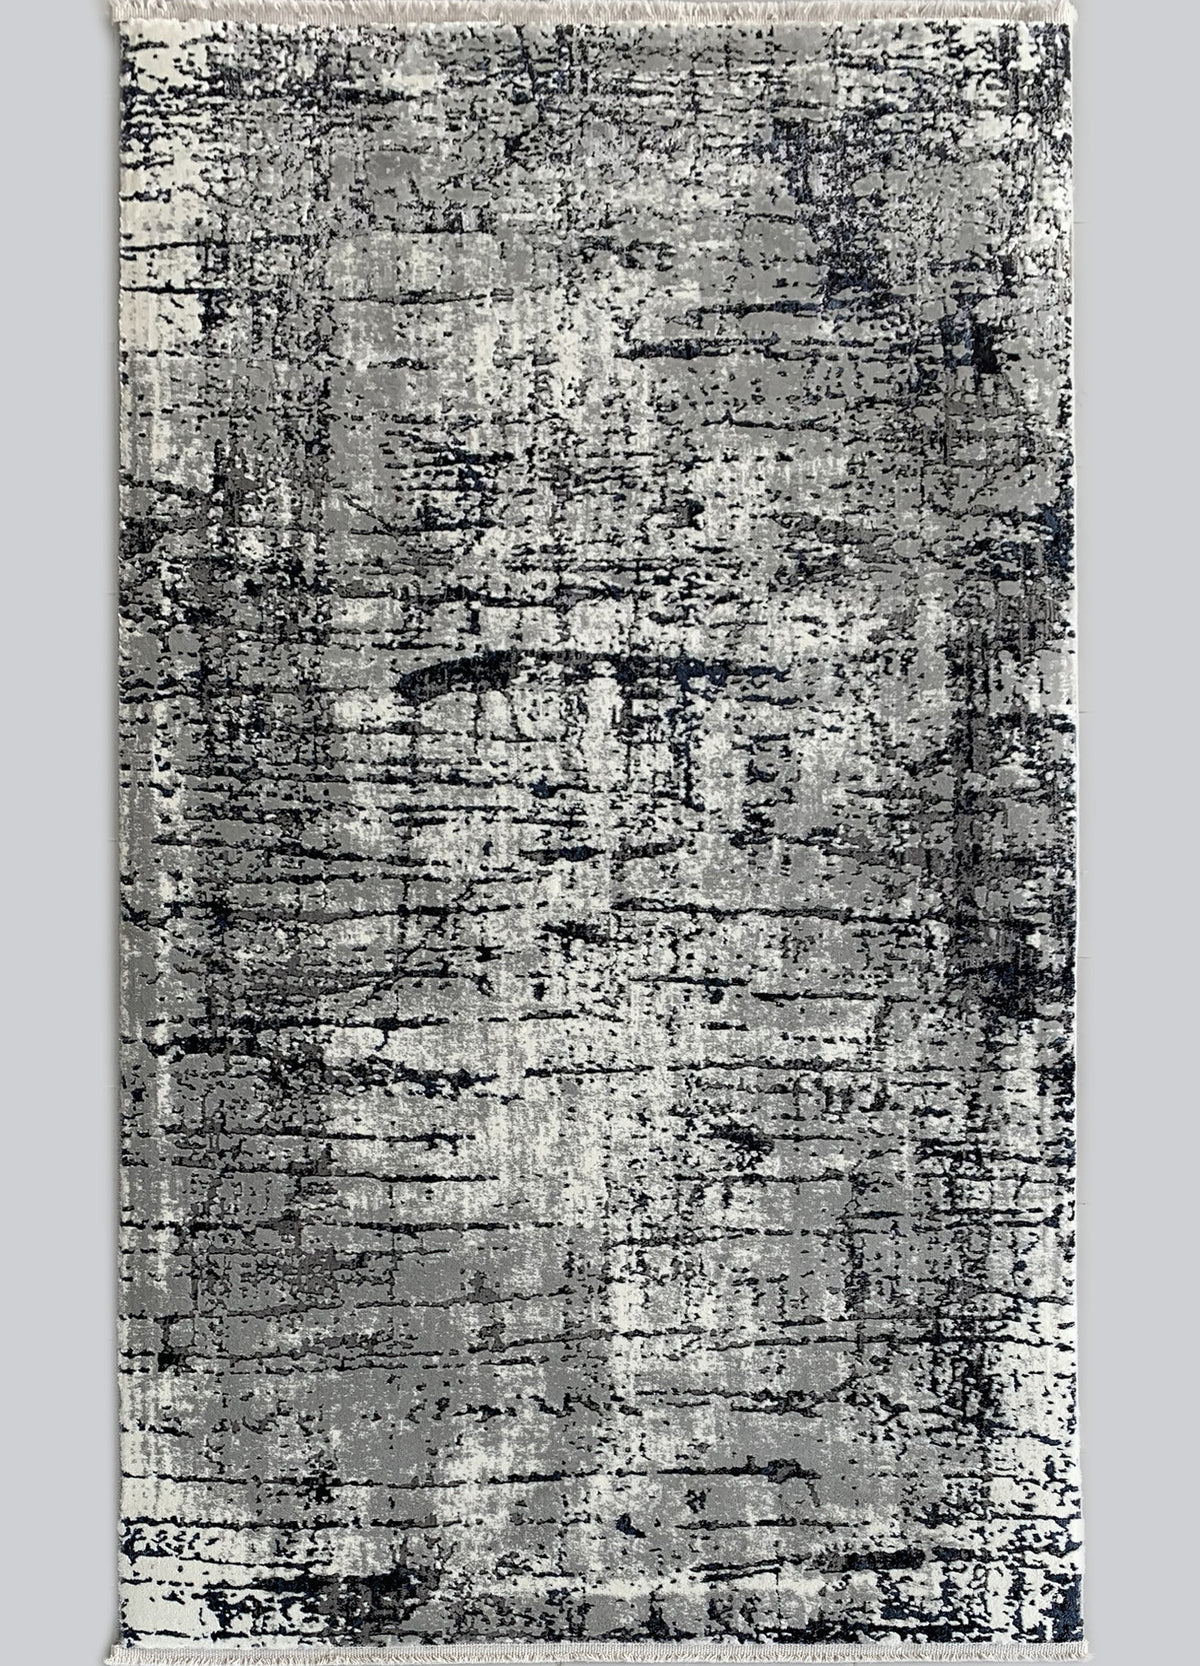 Rugslane Grey White Abstract Runner Carpet 3.2ft X 6.8ft